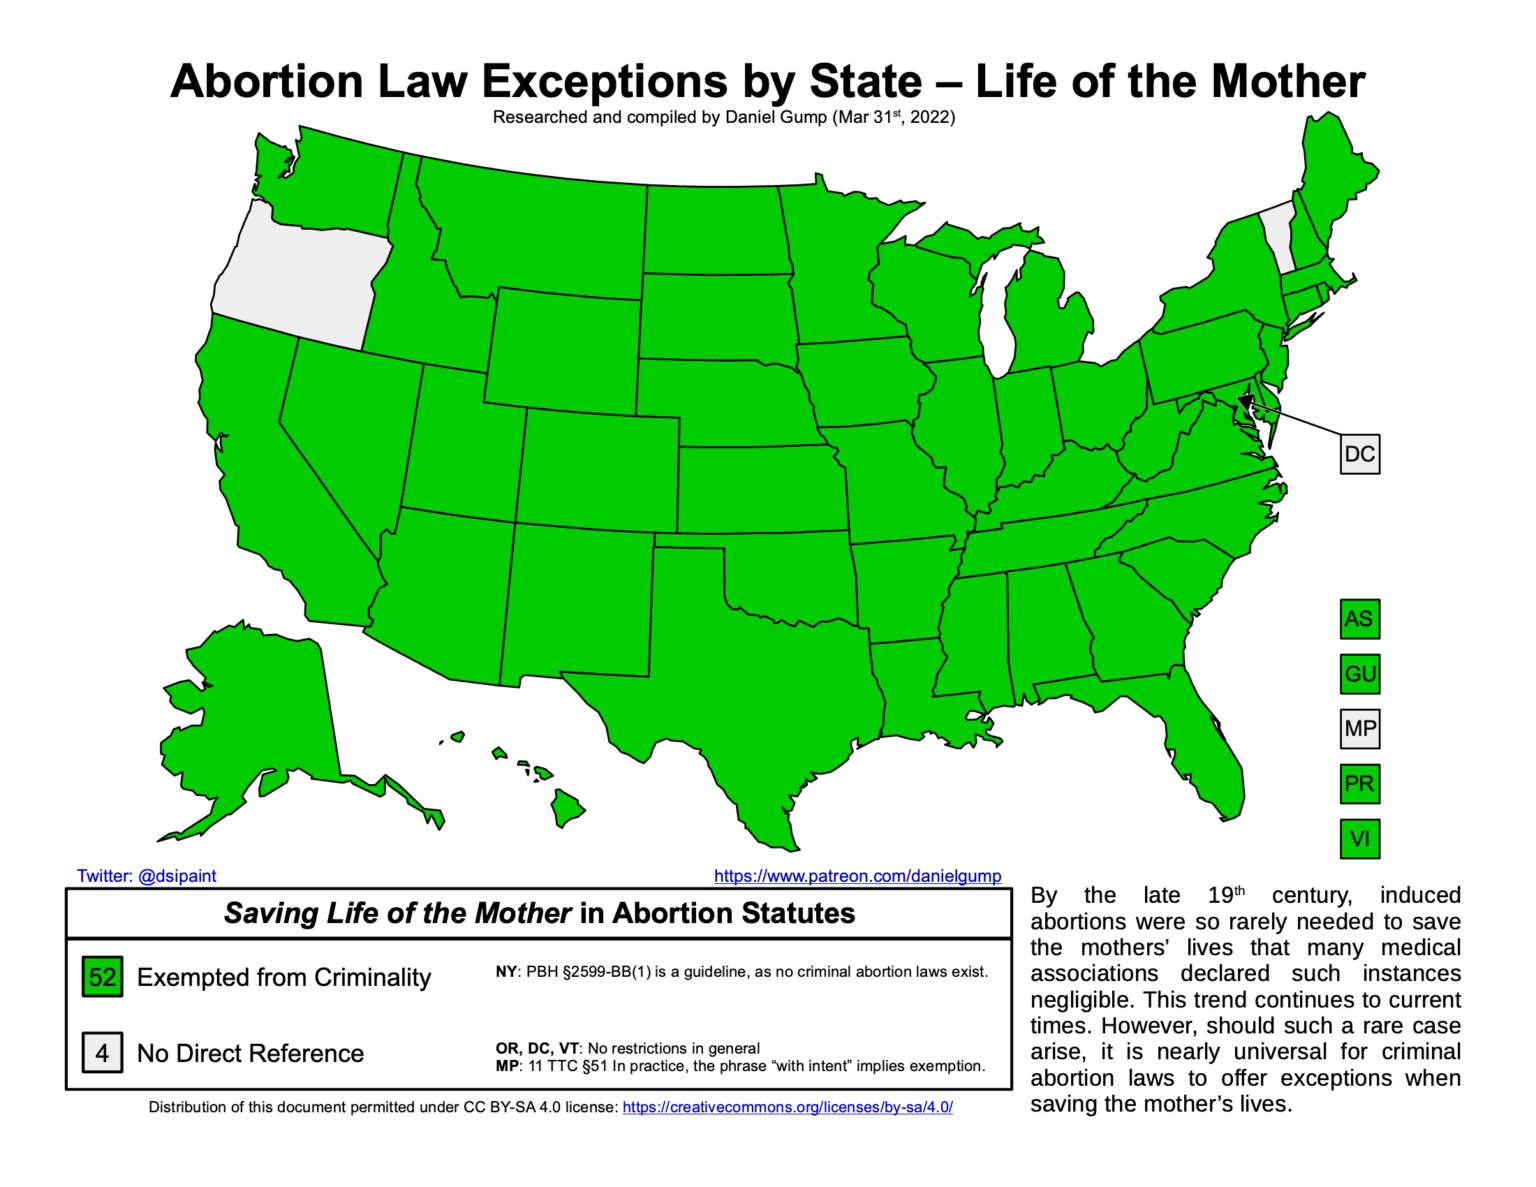 Rechtslage bei Gefahr für die Mutter nach Bundesstaat